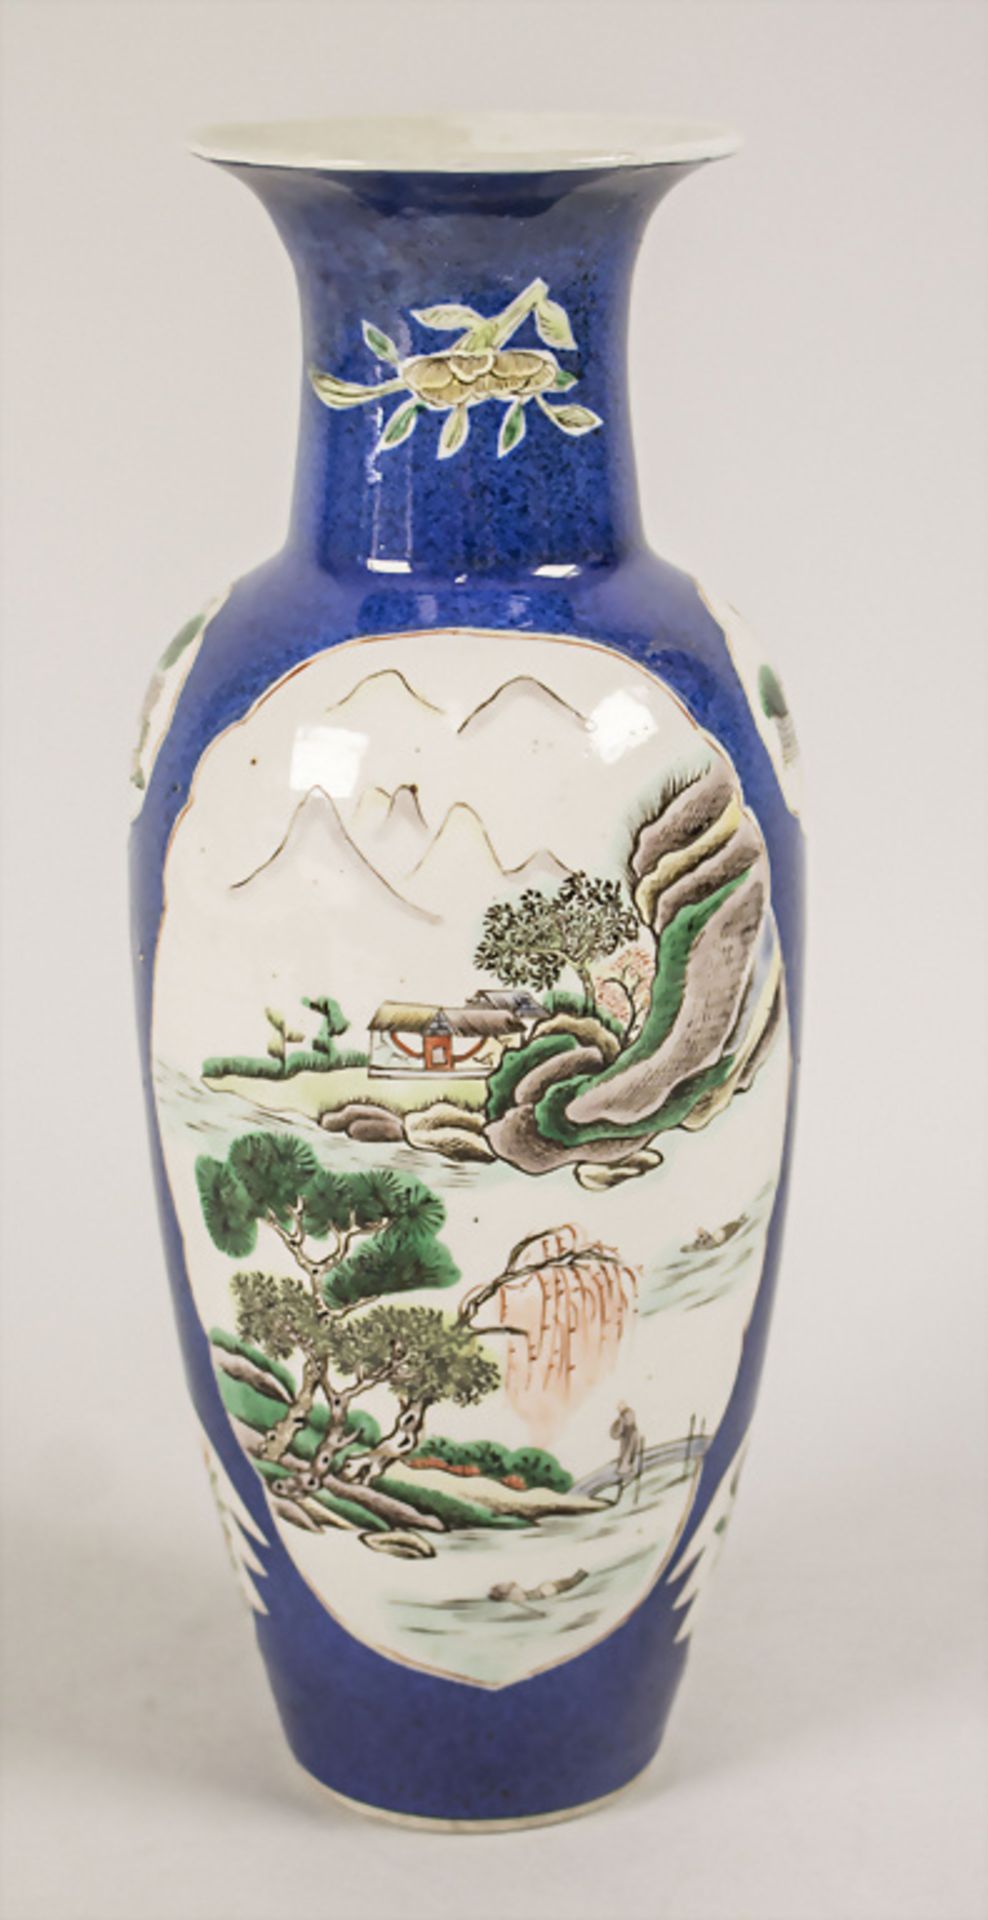 Ziervase / A decorative vase, China, Qing Dynastie (1644-1911), gemarkt Kangxi ( 1662-1722) - Bild 3 aus 5